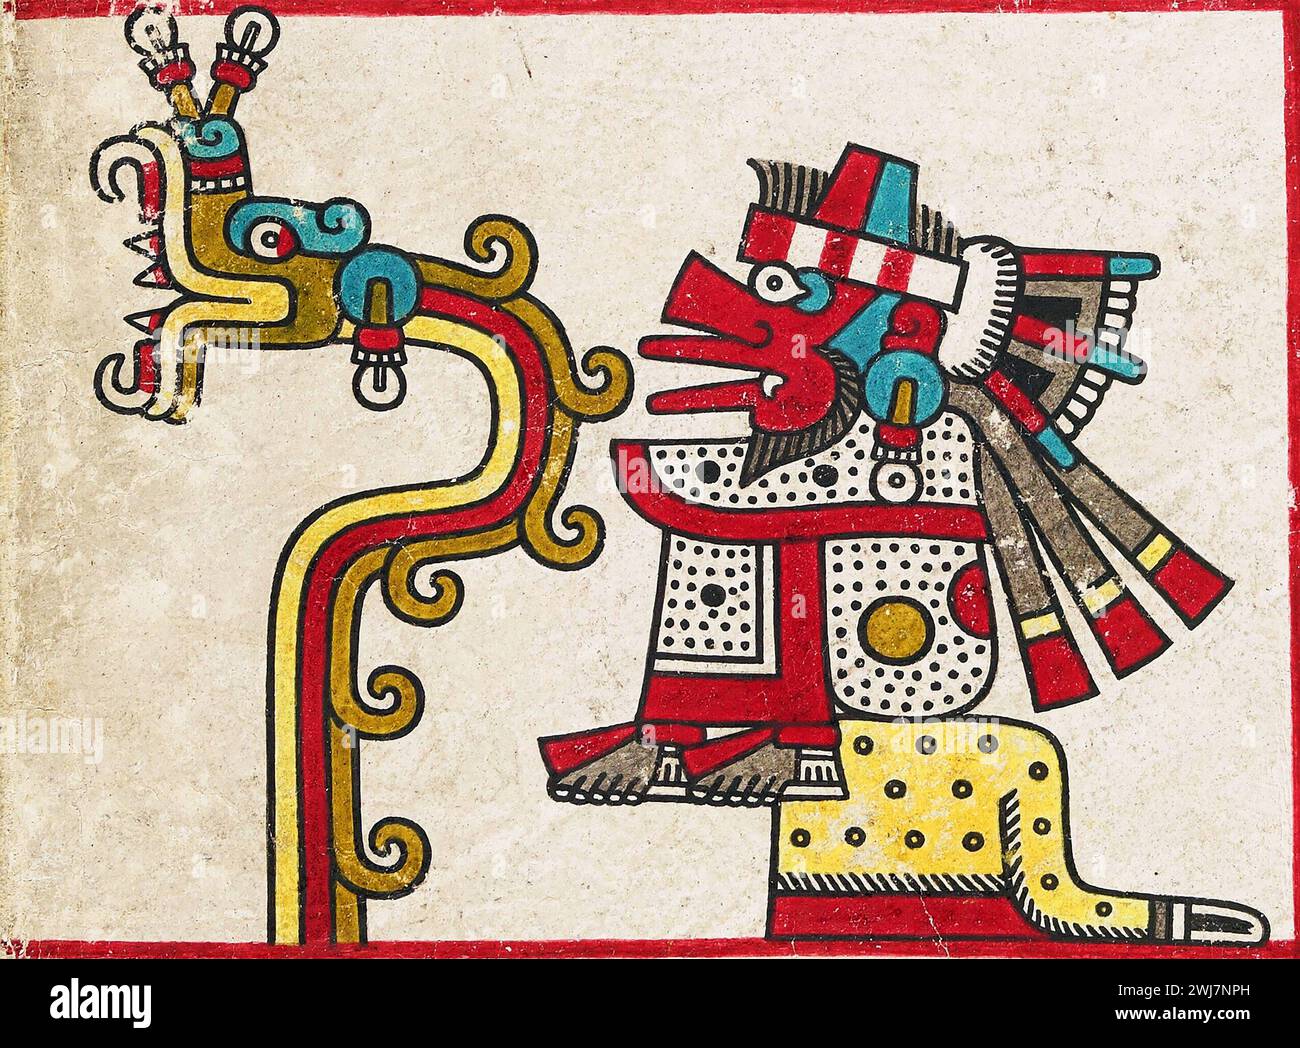 Quetzalcoatl, eine Gottheit der aztekischen Kultur und Literatur. Darstellung der beiden Formen des Gottes Quetzalcoatl aus dem Codex Laud, einer vorhispanischen mexikanischen Handschrift, die möglicherweise im 15. Jahrhundert entstanden ist. Seine Gestalt als gefiederte Schlange, himmlische Gottheit, ist links dargestellt, und seine Gestalt als Gott des Windes Eha atl ist rechts zu sehen. Stockfoto